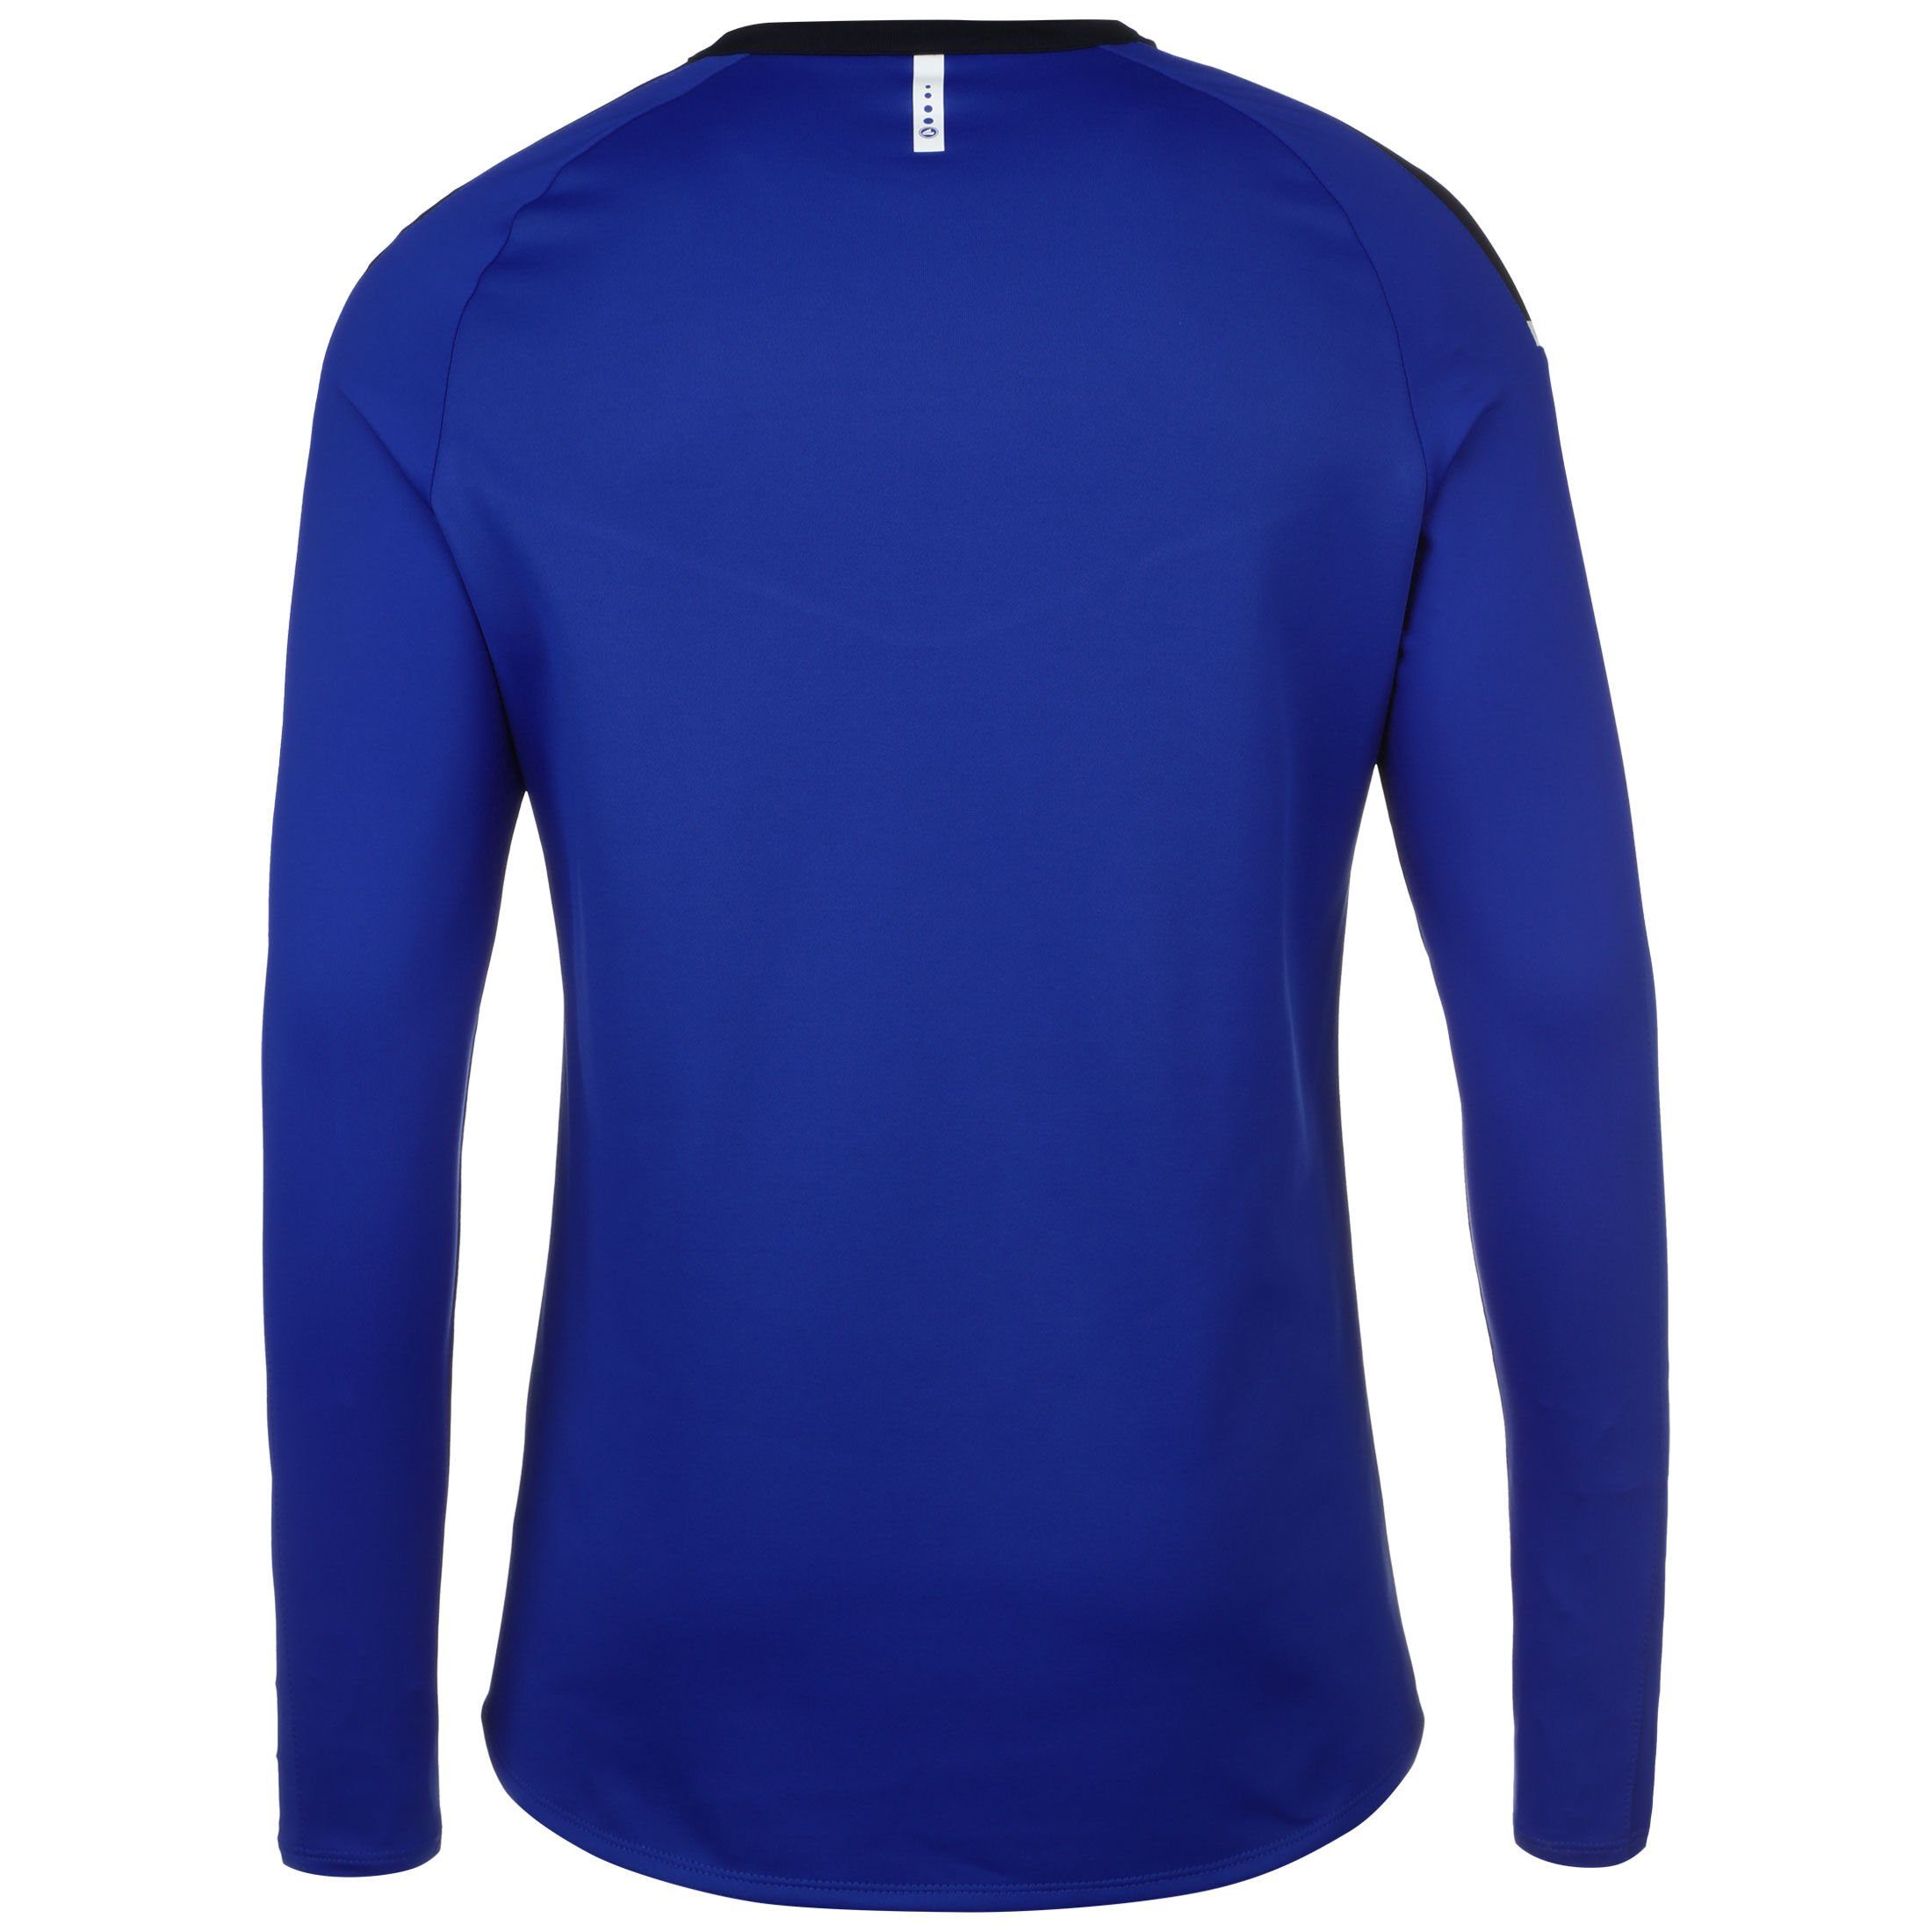 blau 2.0 Champ Herren Jako Sweatshirt dunkelblau / Trainingssweat